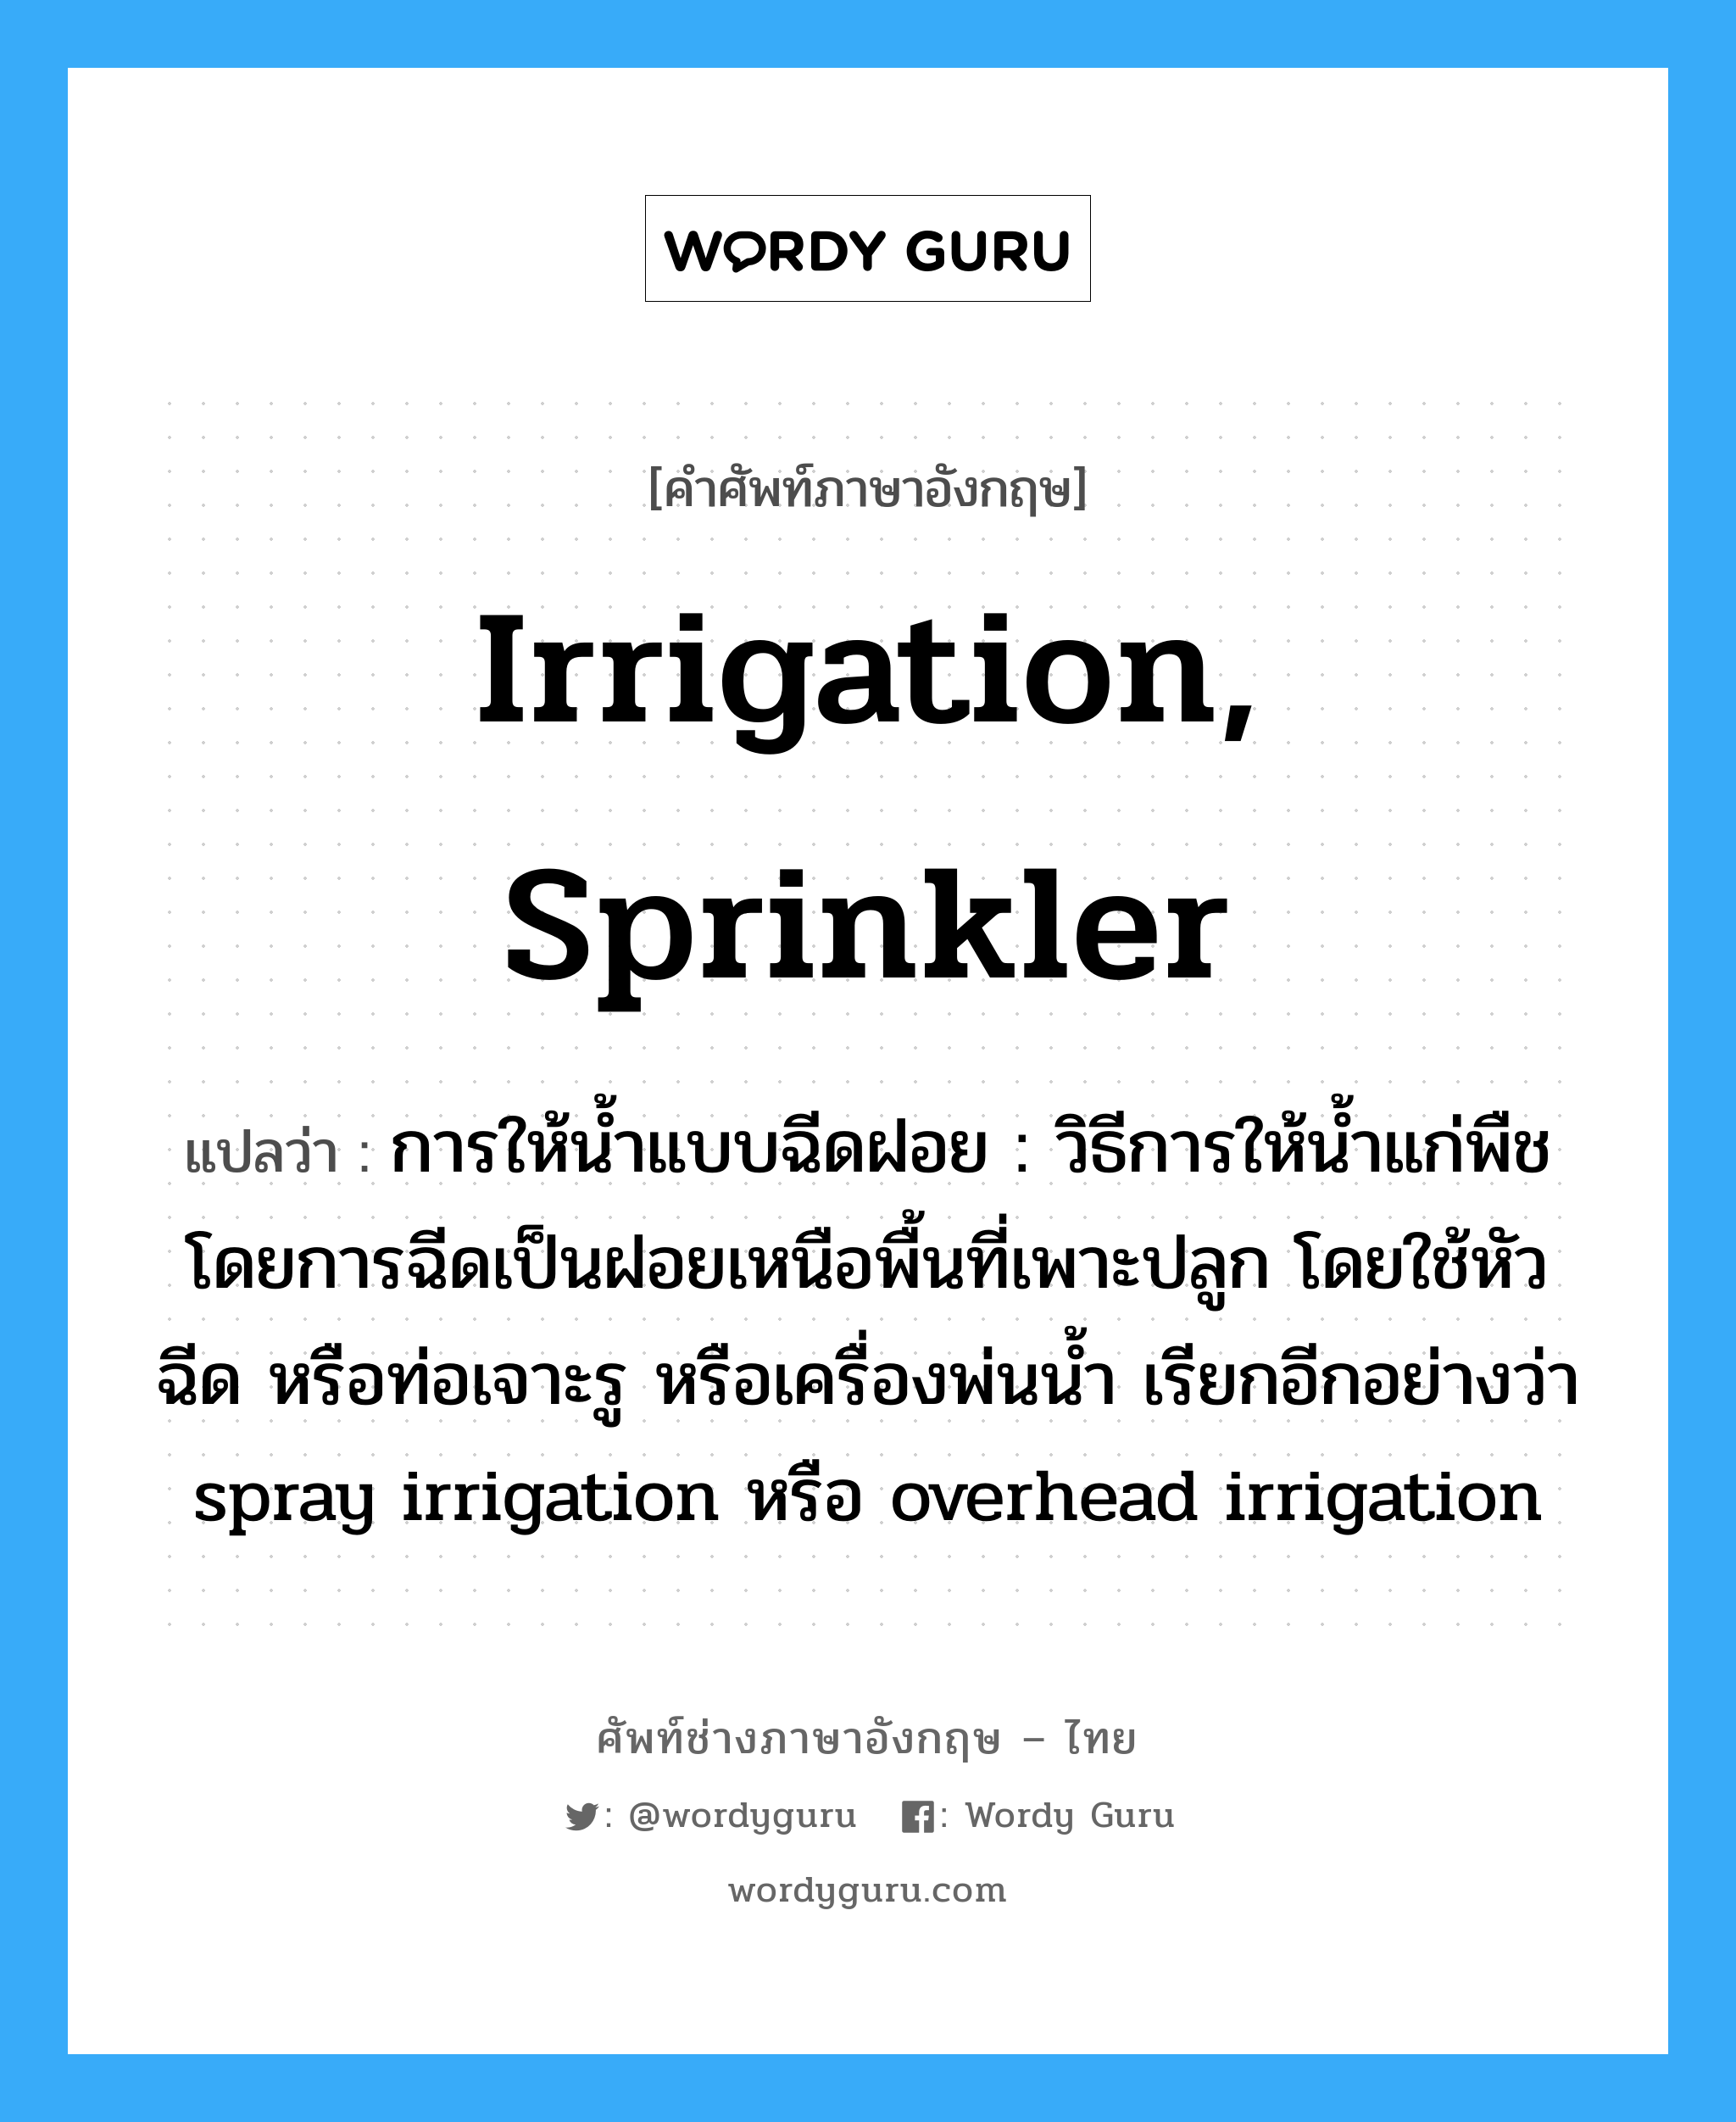 irrigation, sprinkler แปลว่า?, คำศัพท์ช่างภาษาอังกฤษ - ไทย irrigation, sprinkler คำศัพท์ภาษาอังกฤษ irrigation, sprinkler แปลว่า การให้น้ำแบบฉีดฝอย : วิธีการให้น้ำแก่พืชโดยการฉีดเป็นฝอยเหนือพื้นที่เพาะปลูก โดยใช้หัวฉีด หรือท่อเจาะรู หรือเครื่องพ่นน้ำ เรียกอีกอย่างว่า spray irrigation หรือ overhead irrigation